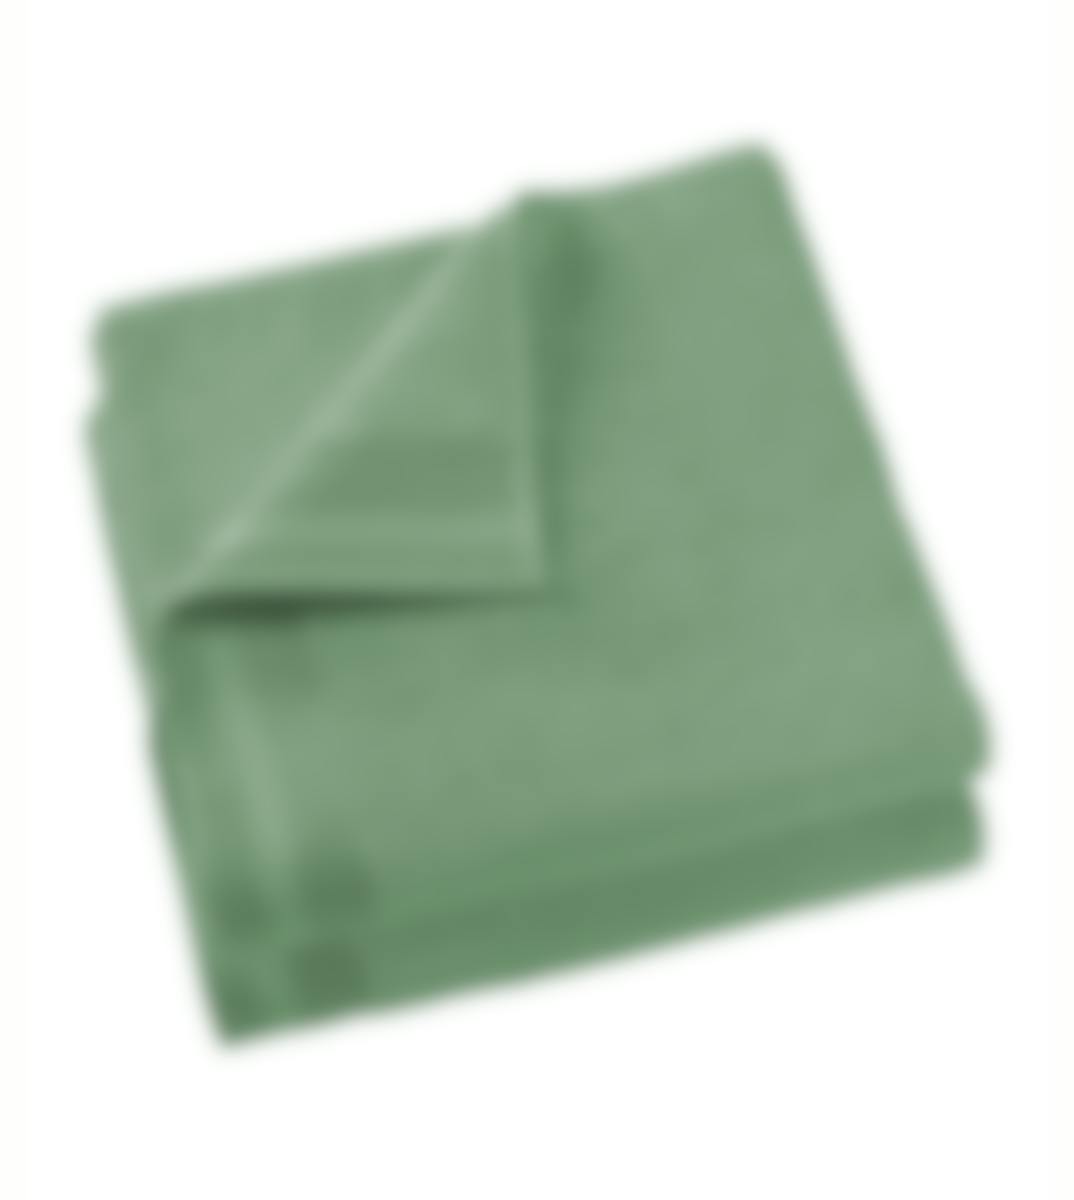 De Witte Lietaer 2 serviette de bains Contessa sea green